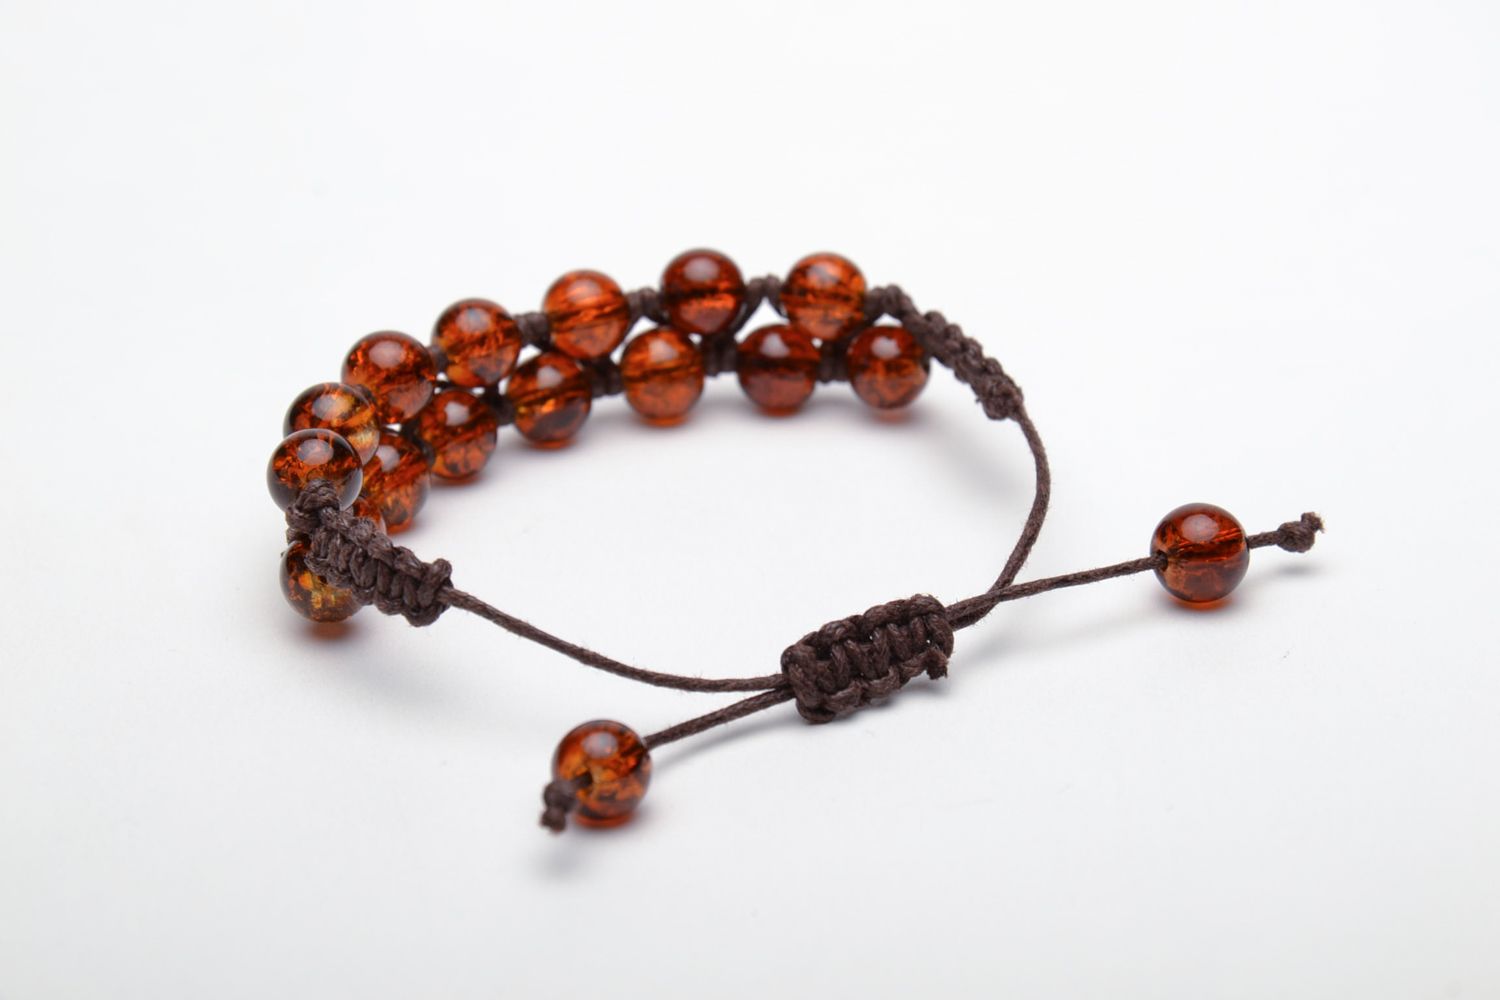 Wrist bracelet made of amber-like beads photo 4